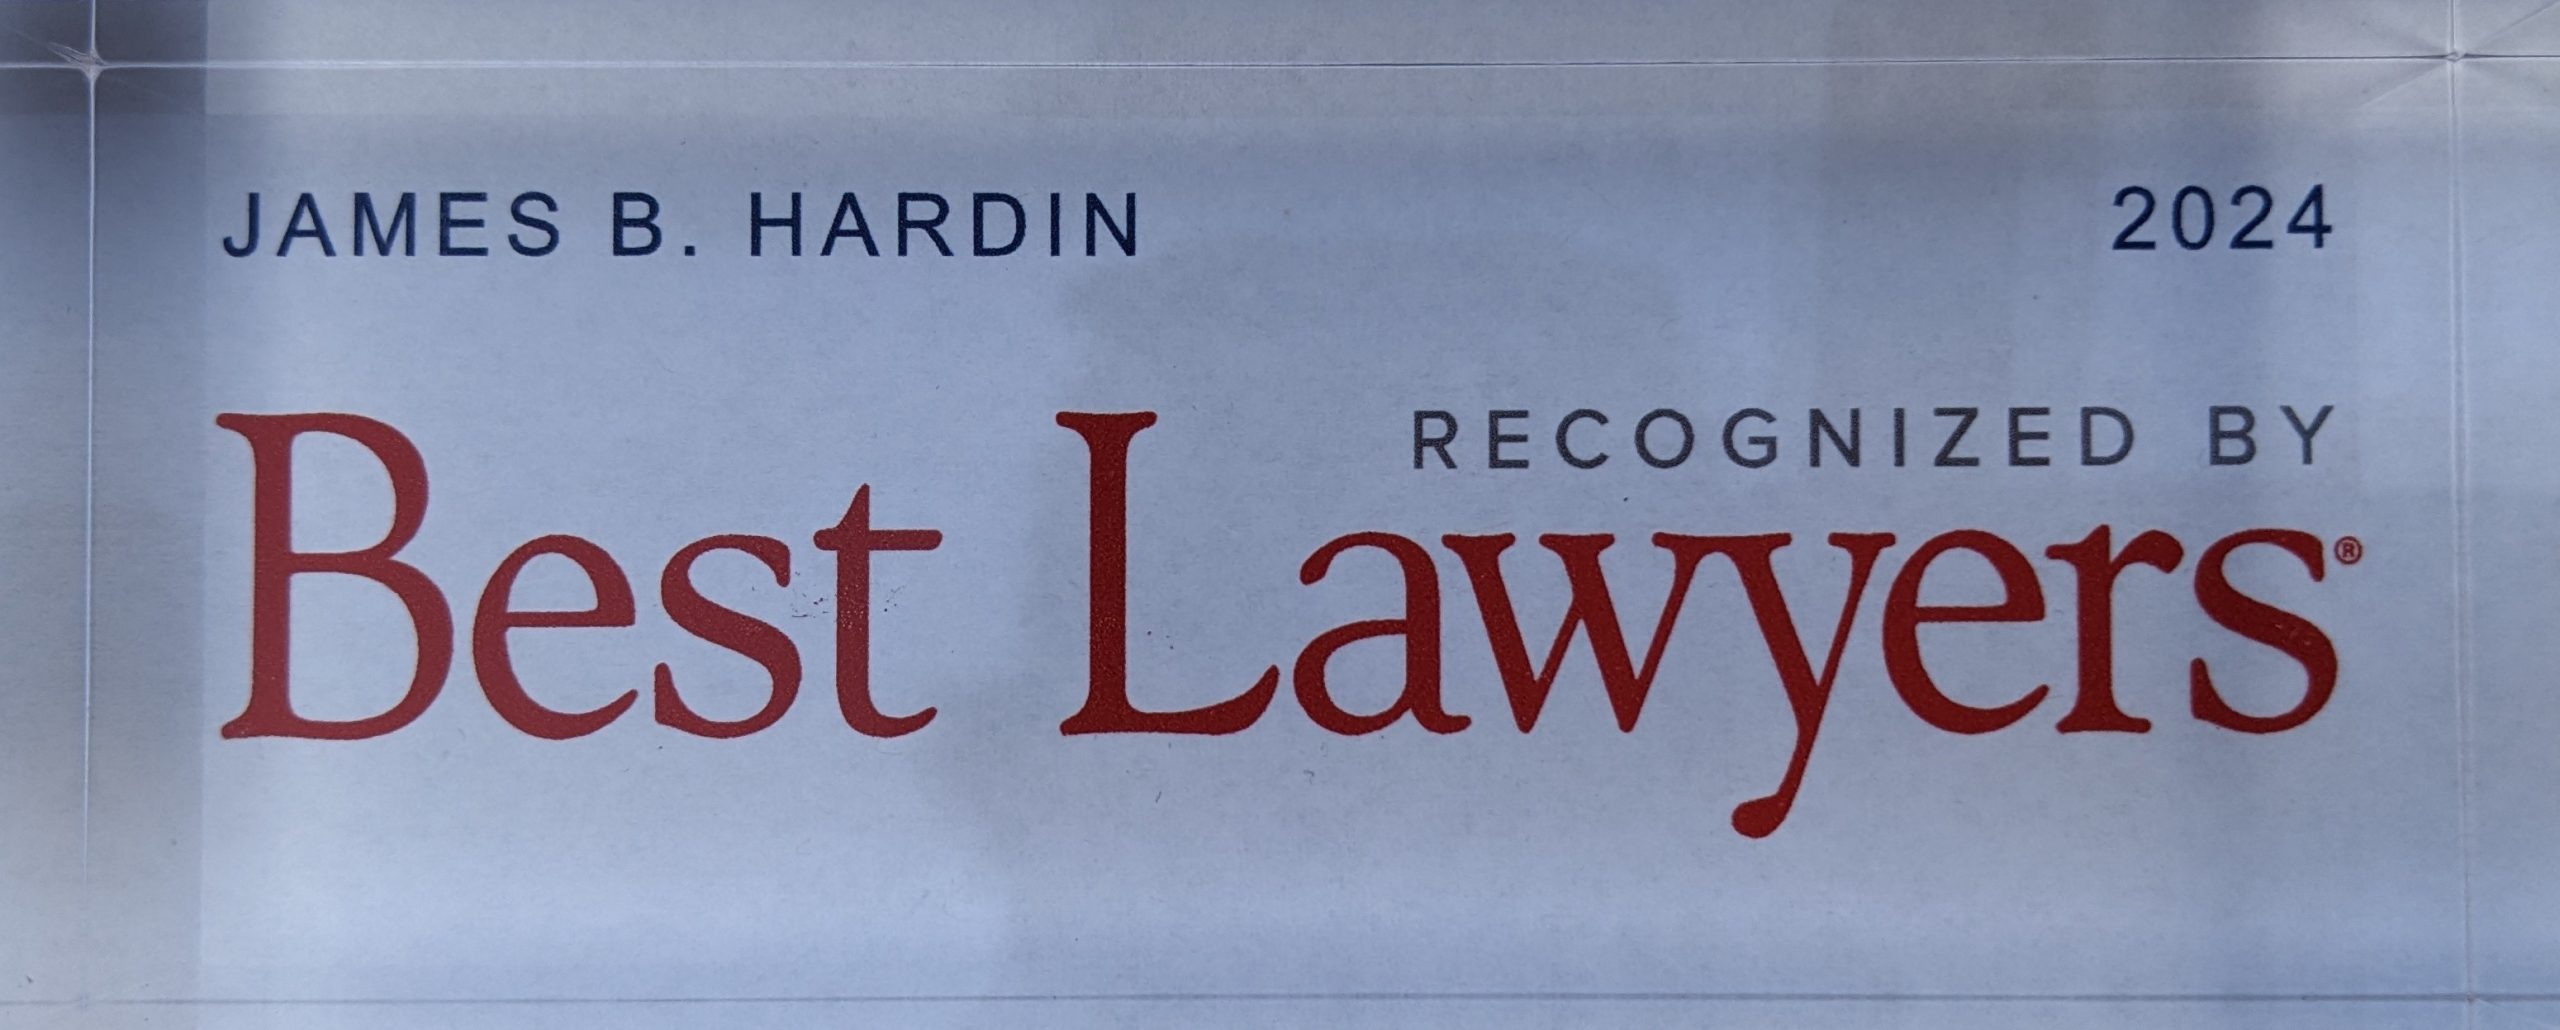 Best Lawyers 2024 James Hardin